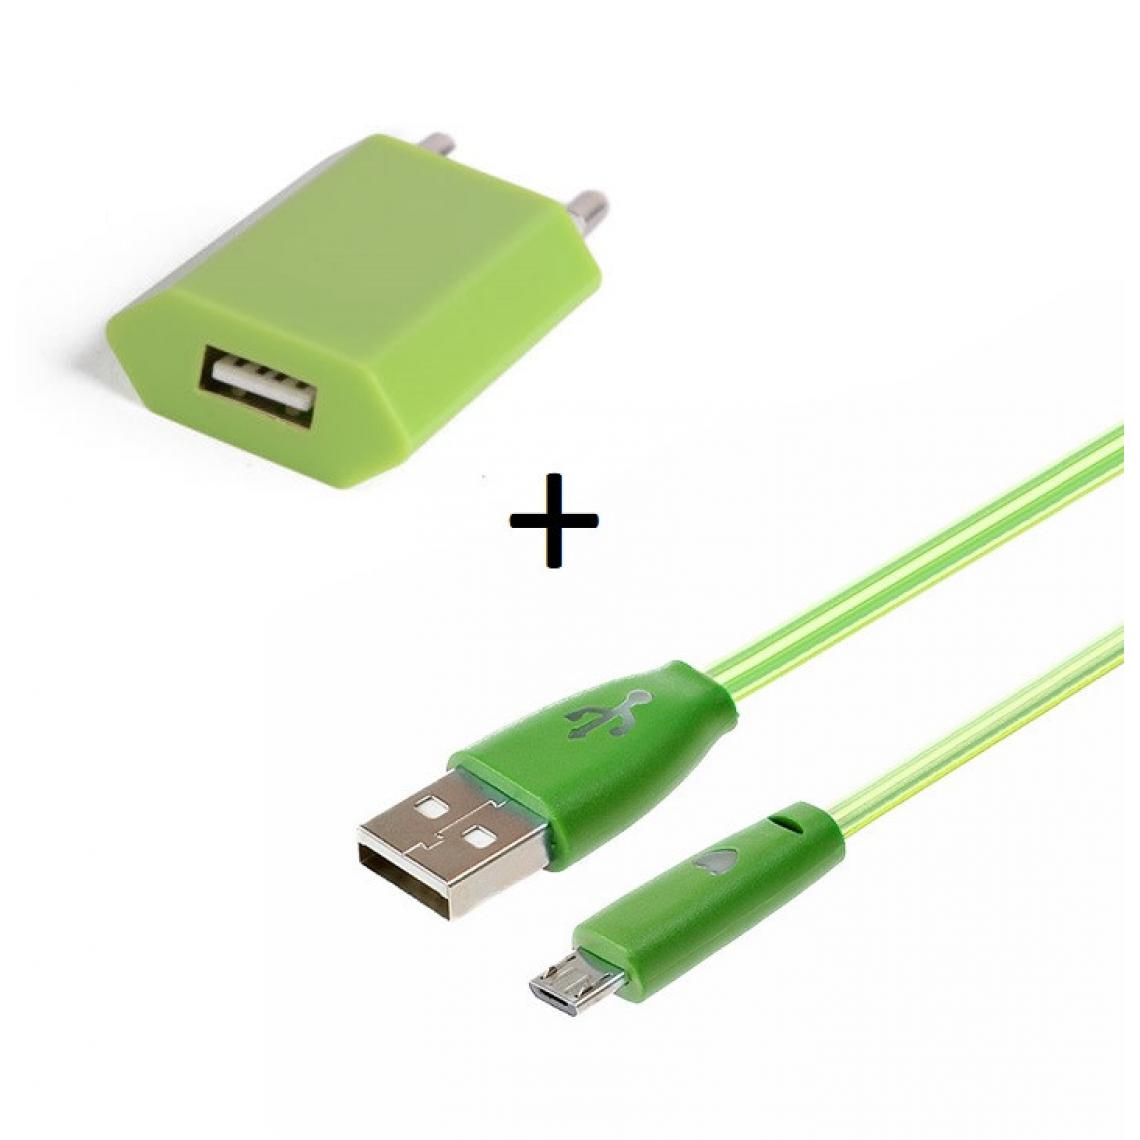 Shot - Pack Chargeur pour "IPHONE 12 Mini" Lightning (Cable Smiley LED + Prise Secteur USB)(VERT) - Chargeur secteur téléphone